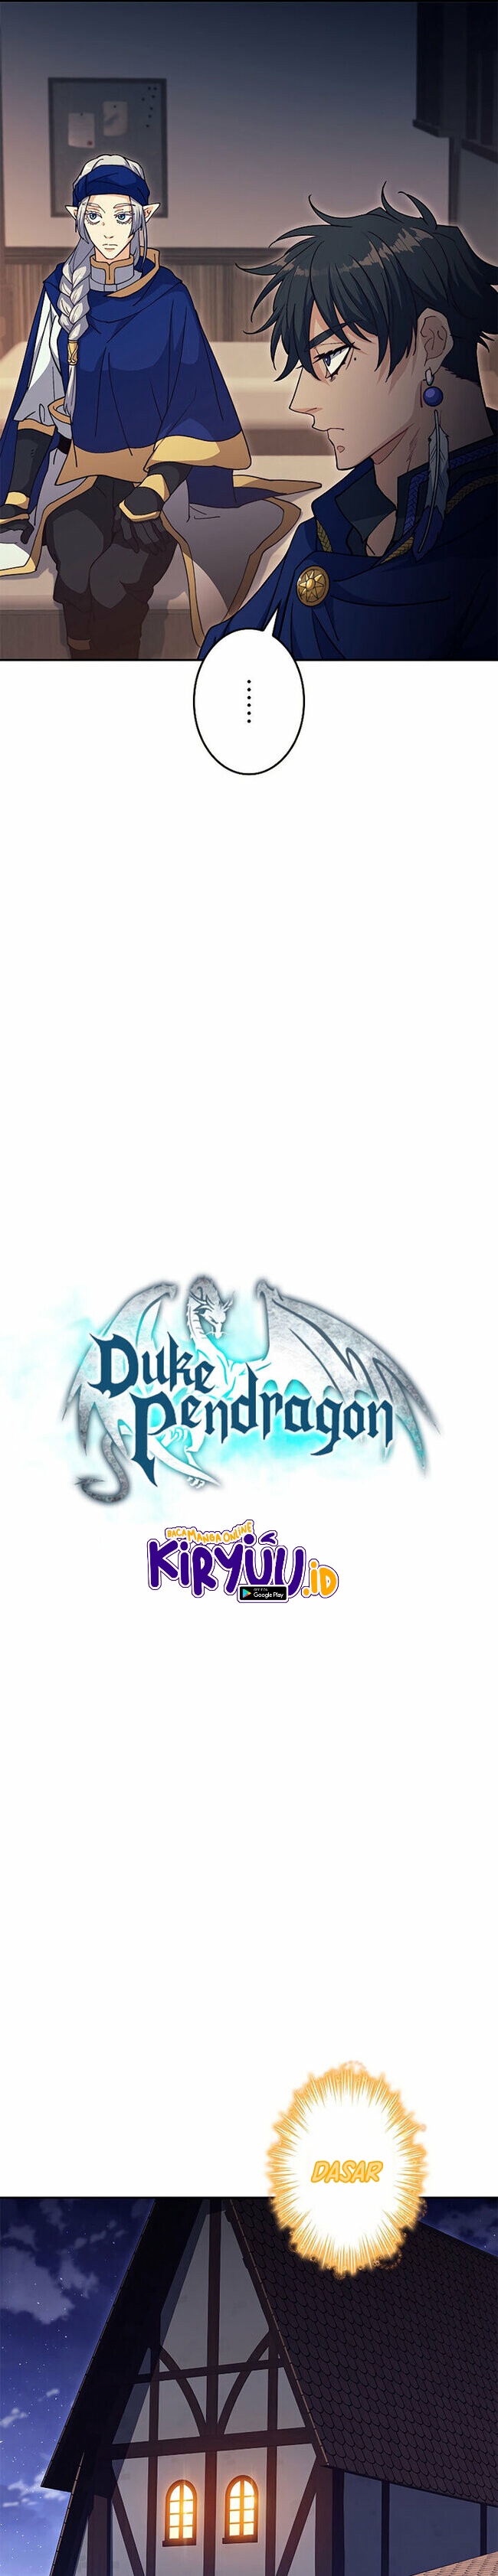 White Dragon Duke: Pendragon (Duke Pendragon) Chapter 58 - 275